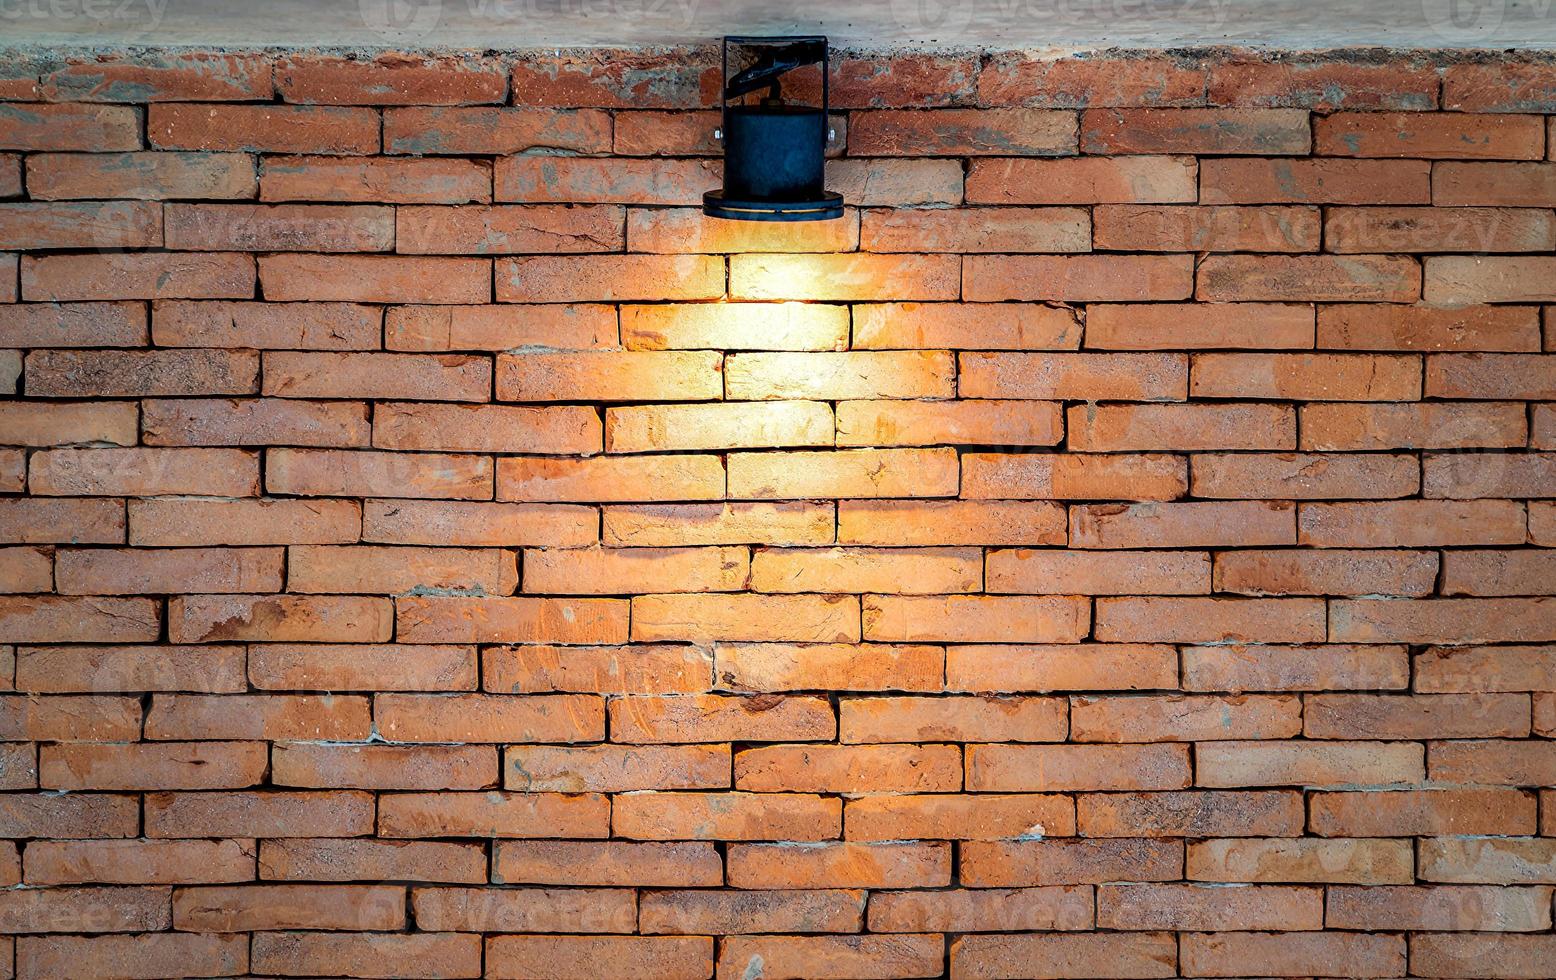 Brickwall-Hintergrund mit den Wolframlichtern von Spotlight für Kunstausstellungen oder klassischen Vintage-Display-Produkthintergrund. foto